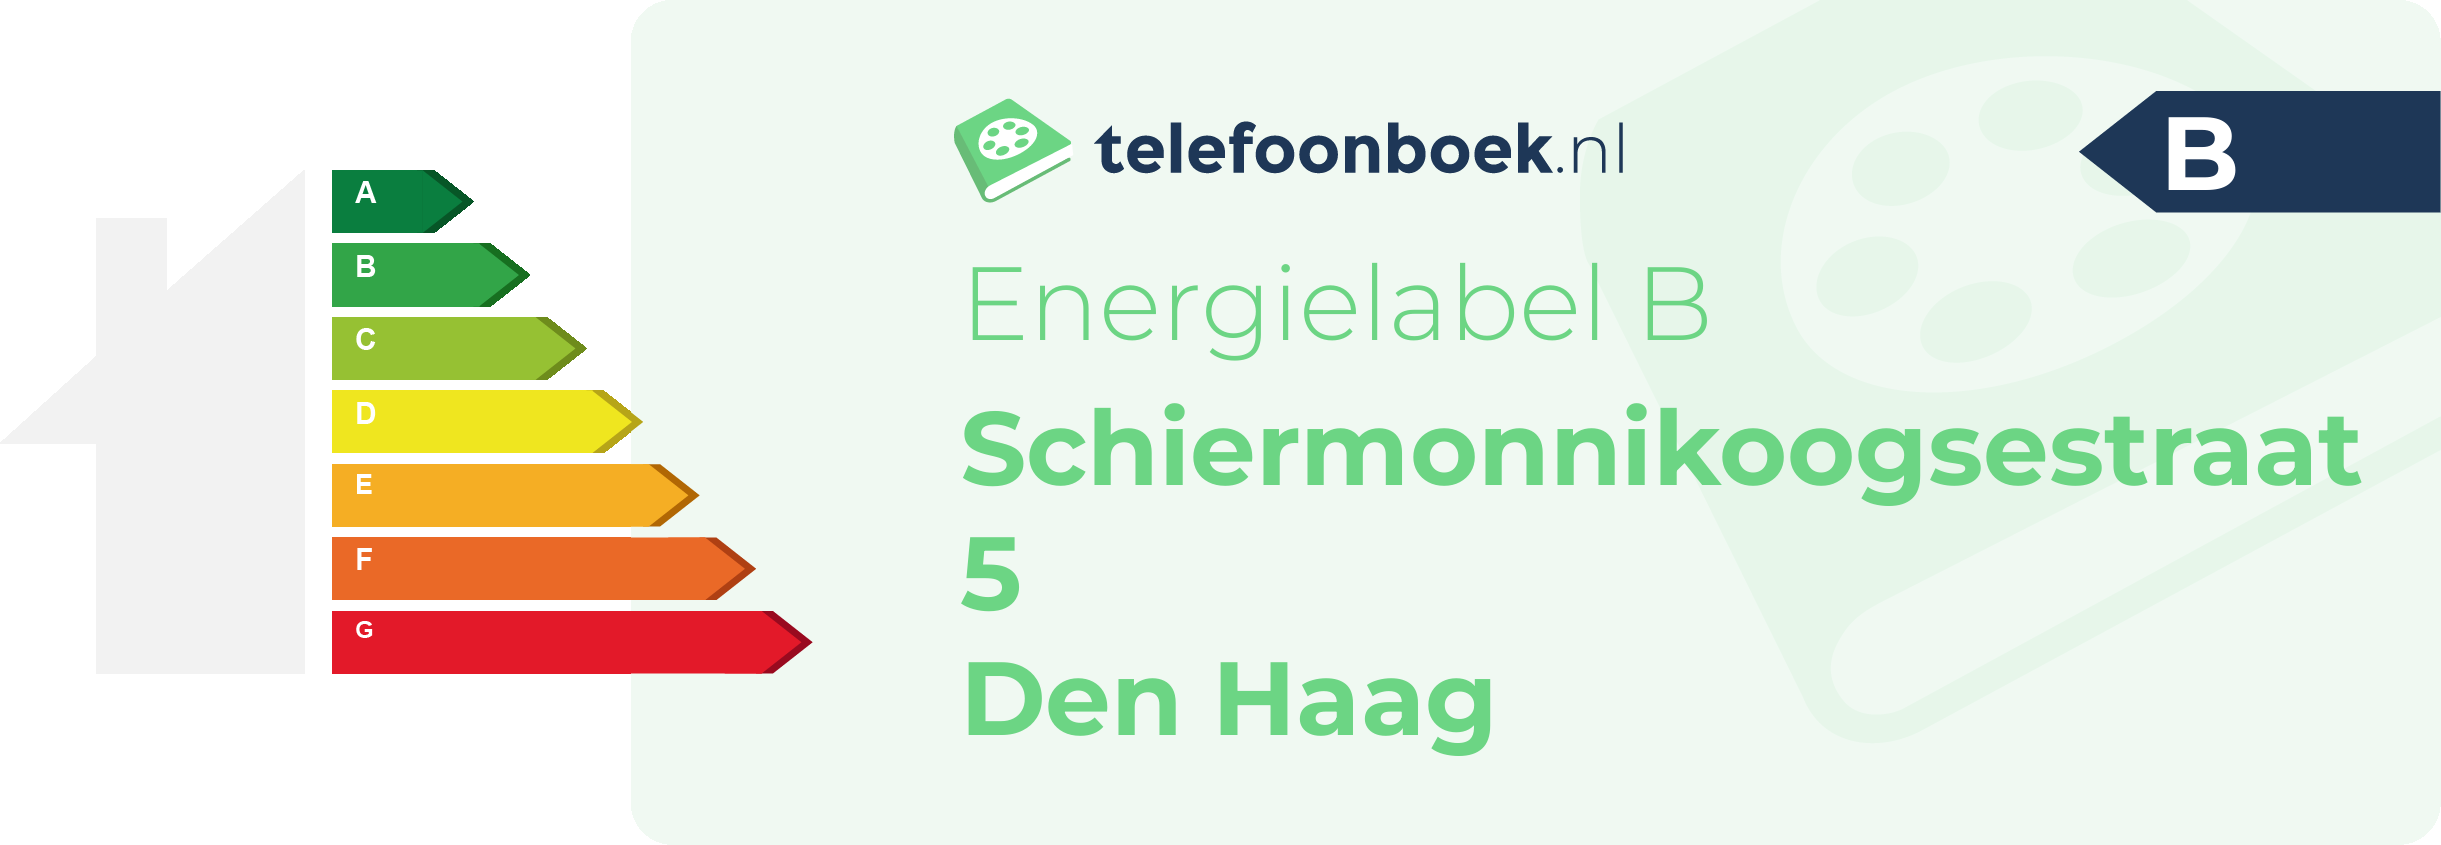 Energielabel Schiermonnikoogsestraat 5 Den Haag